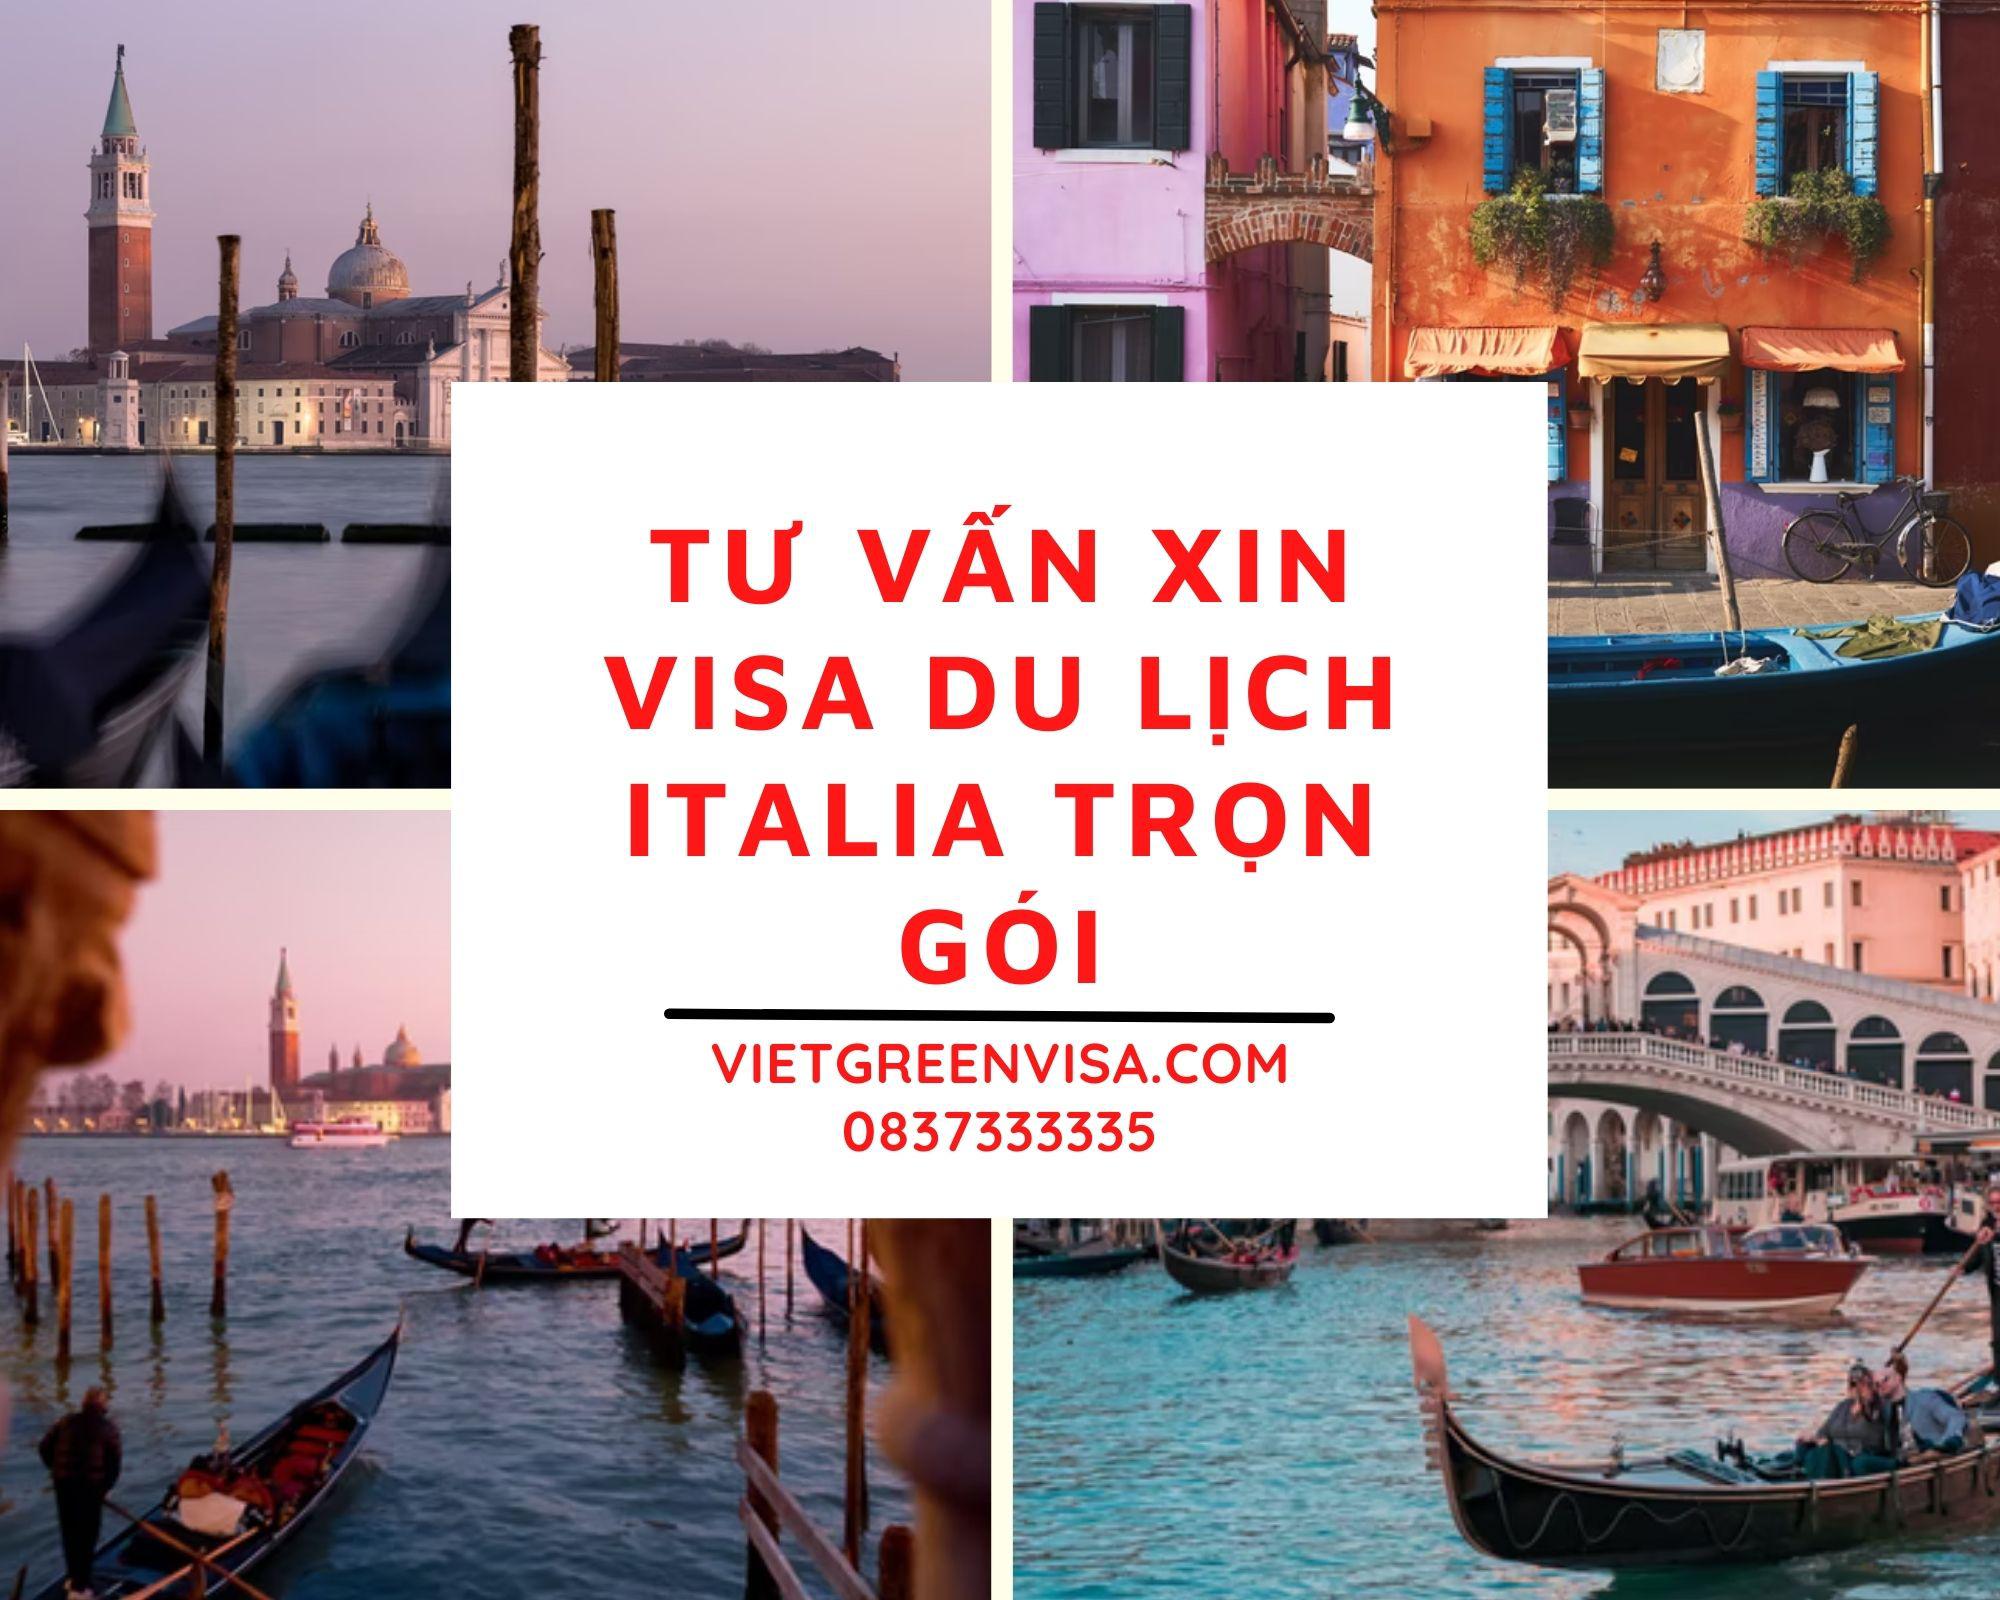 Tư vấn xin visa du lịch Italia trọn gói tại Viet Green Visa